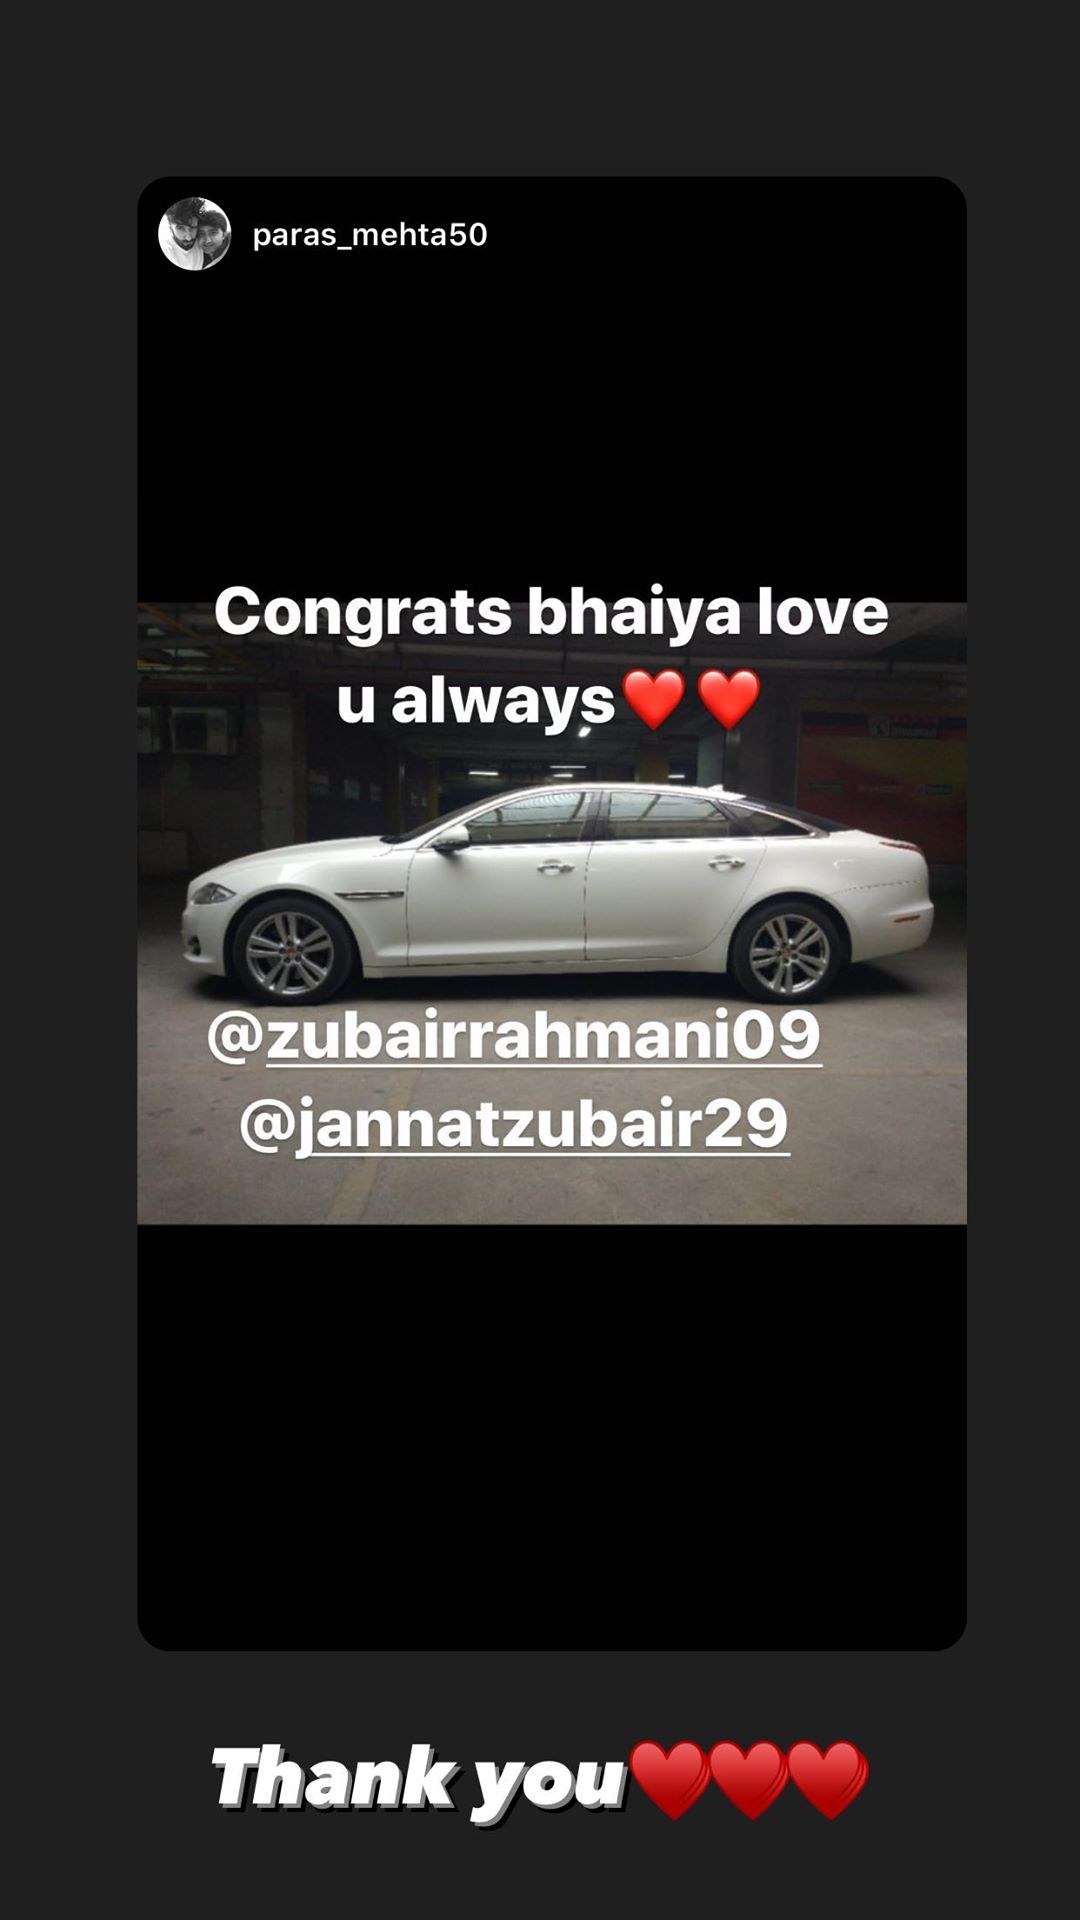 Jannat Zubair is proud owner of a swanky Jaguar